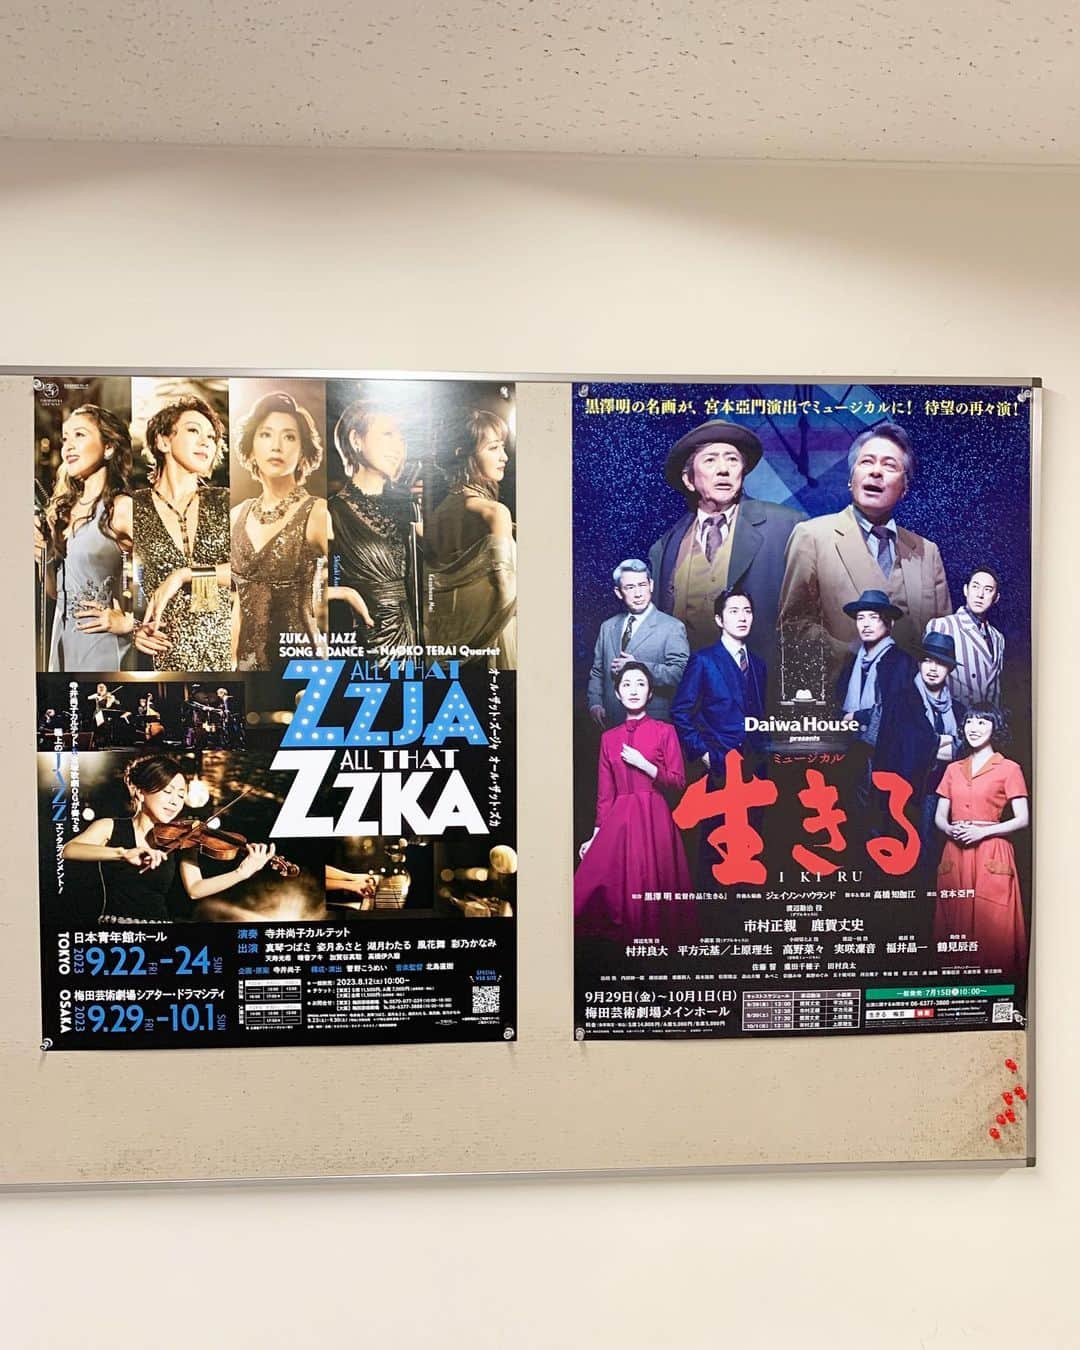 福井晶一のインスタグラム：「本日、ミュージカル「生きる」 大阪公演、初日です㊗️  気持ちよく晴れましたね☀️  なんと同じ梅田芸術劇場のシアター・ドラマシティでは真琴つばささん出演の「ALL THAT ZZJA／ALL THAT ZZKA」が本日、初日を迎えます。  全く同じスケジュールなので観劇が叶わないのがとても残念ですが、すぐ側にまみさんがいると思うと、それだけで勇気が湧いてきます！しかも演出は菅野こうめいさん✨  お互いに良い初日にしましょう！ それでは劇場でお待ちしています😌  #ミュージカル生きる #梅田芸術劇場メインホール  #梅田芸術劇場シアタードラマシティ  #真琴つばさ さん #福井晶一 #プレミアムバースデー #cottonclub  #11月25日」